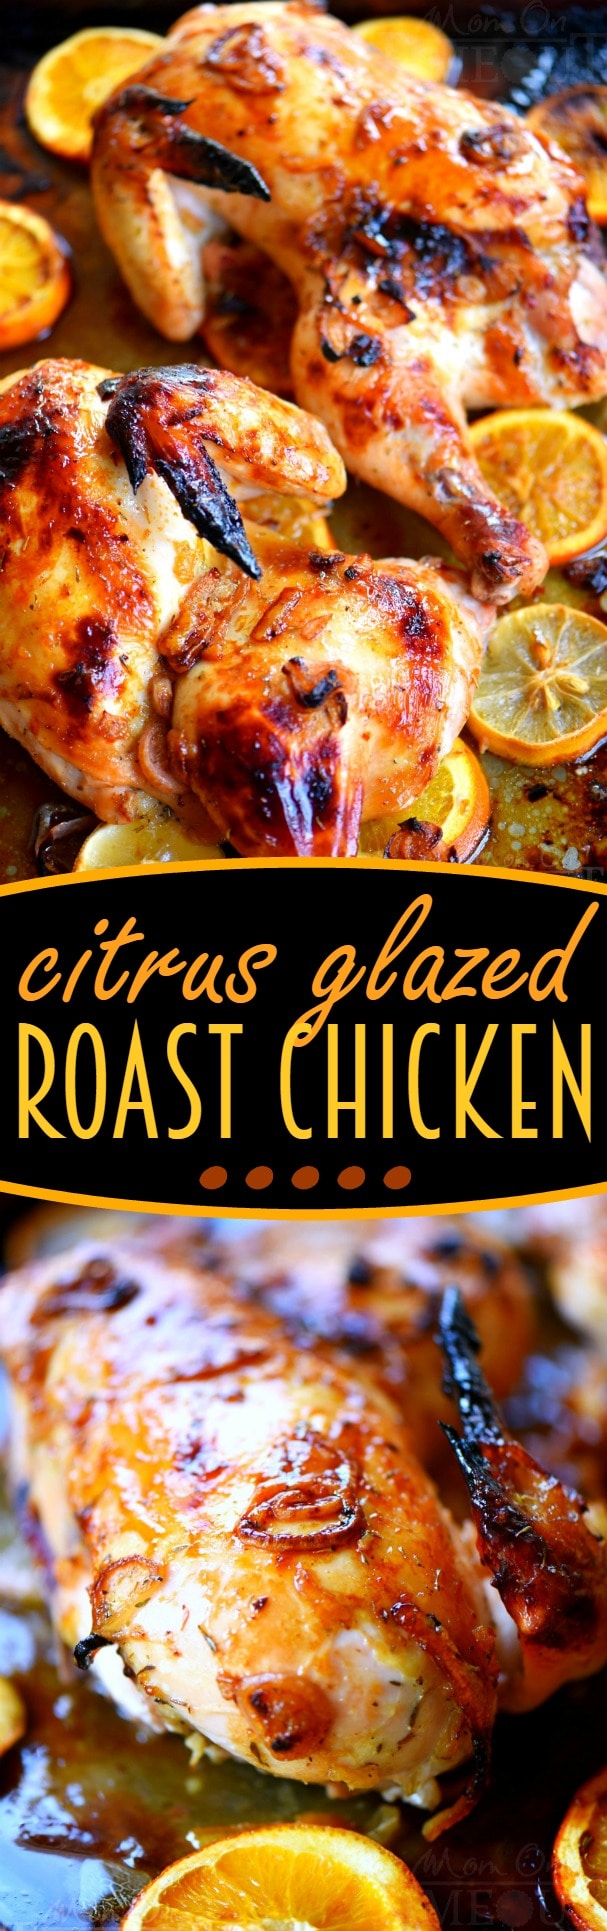 citrus-glazed-roast-chicken-collage